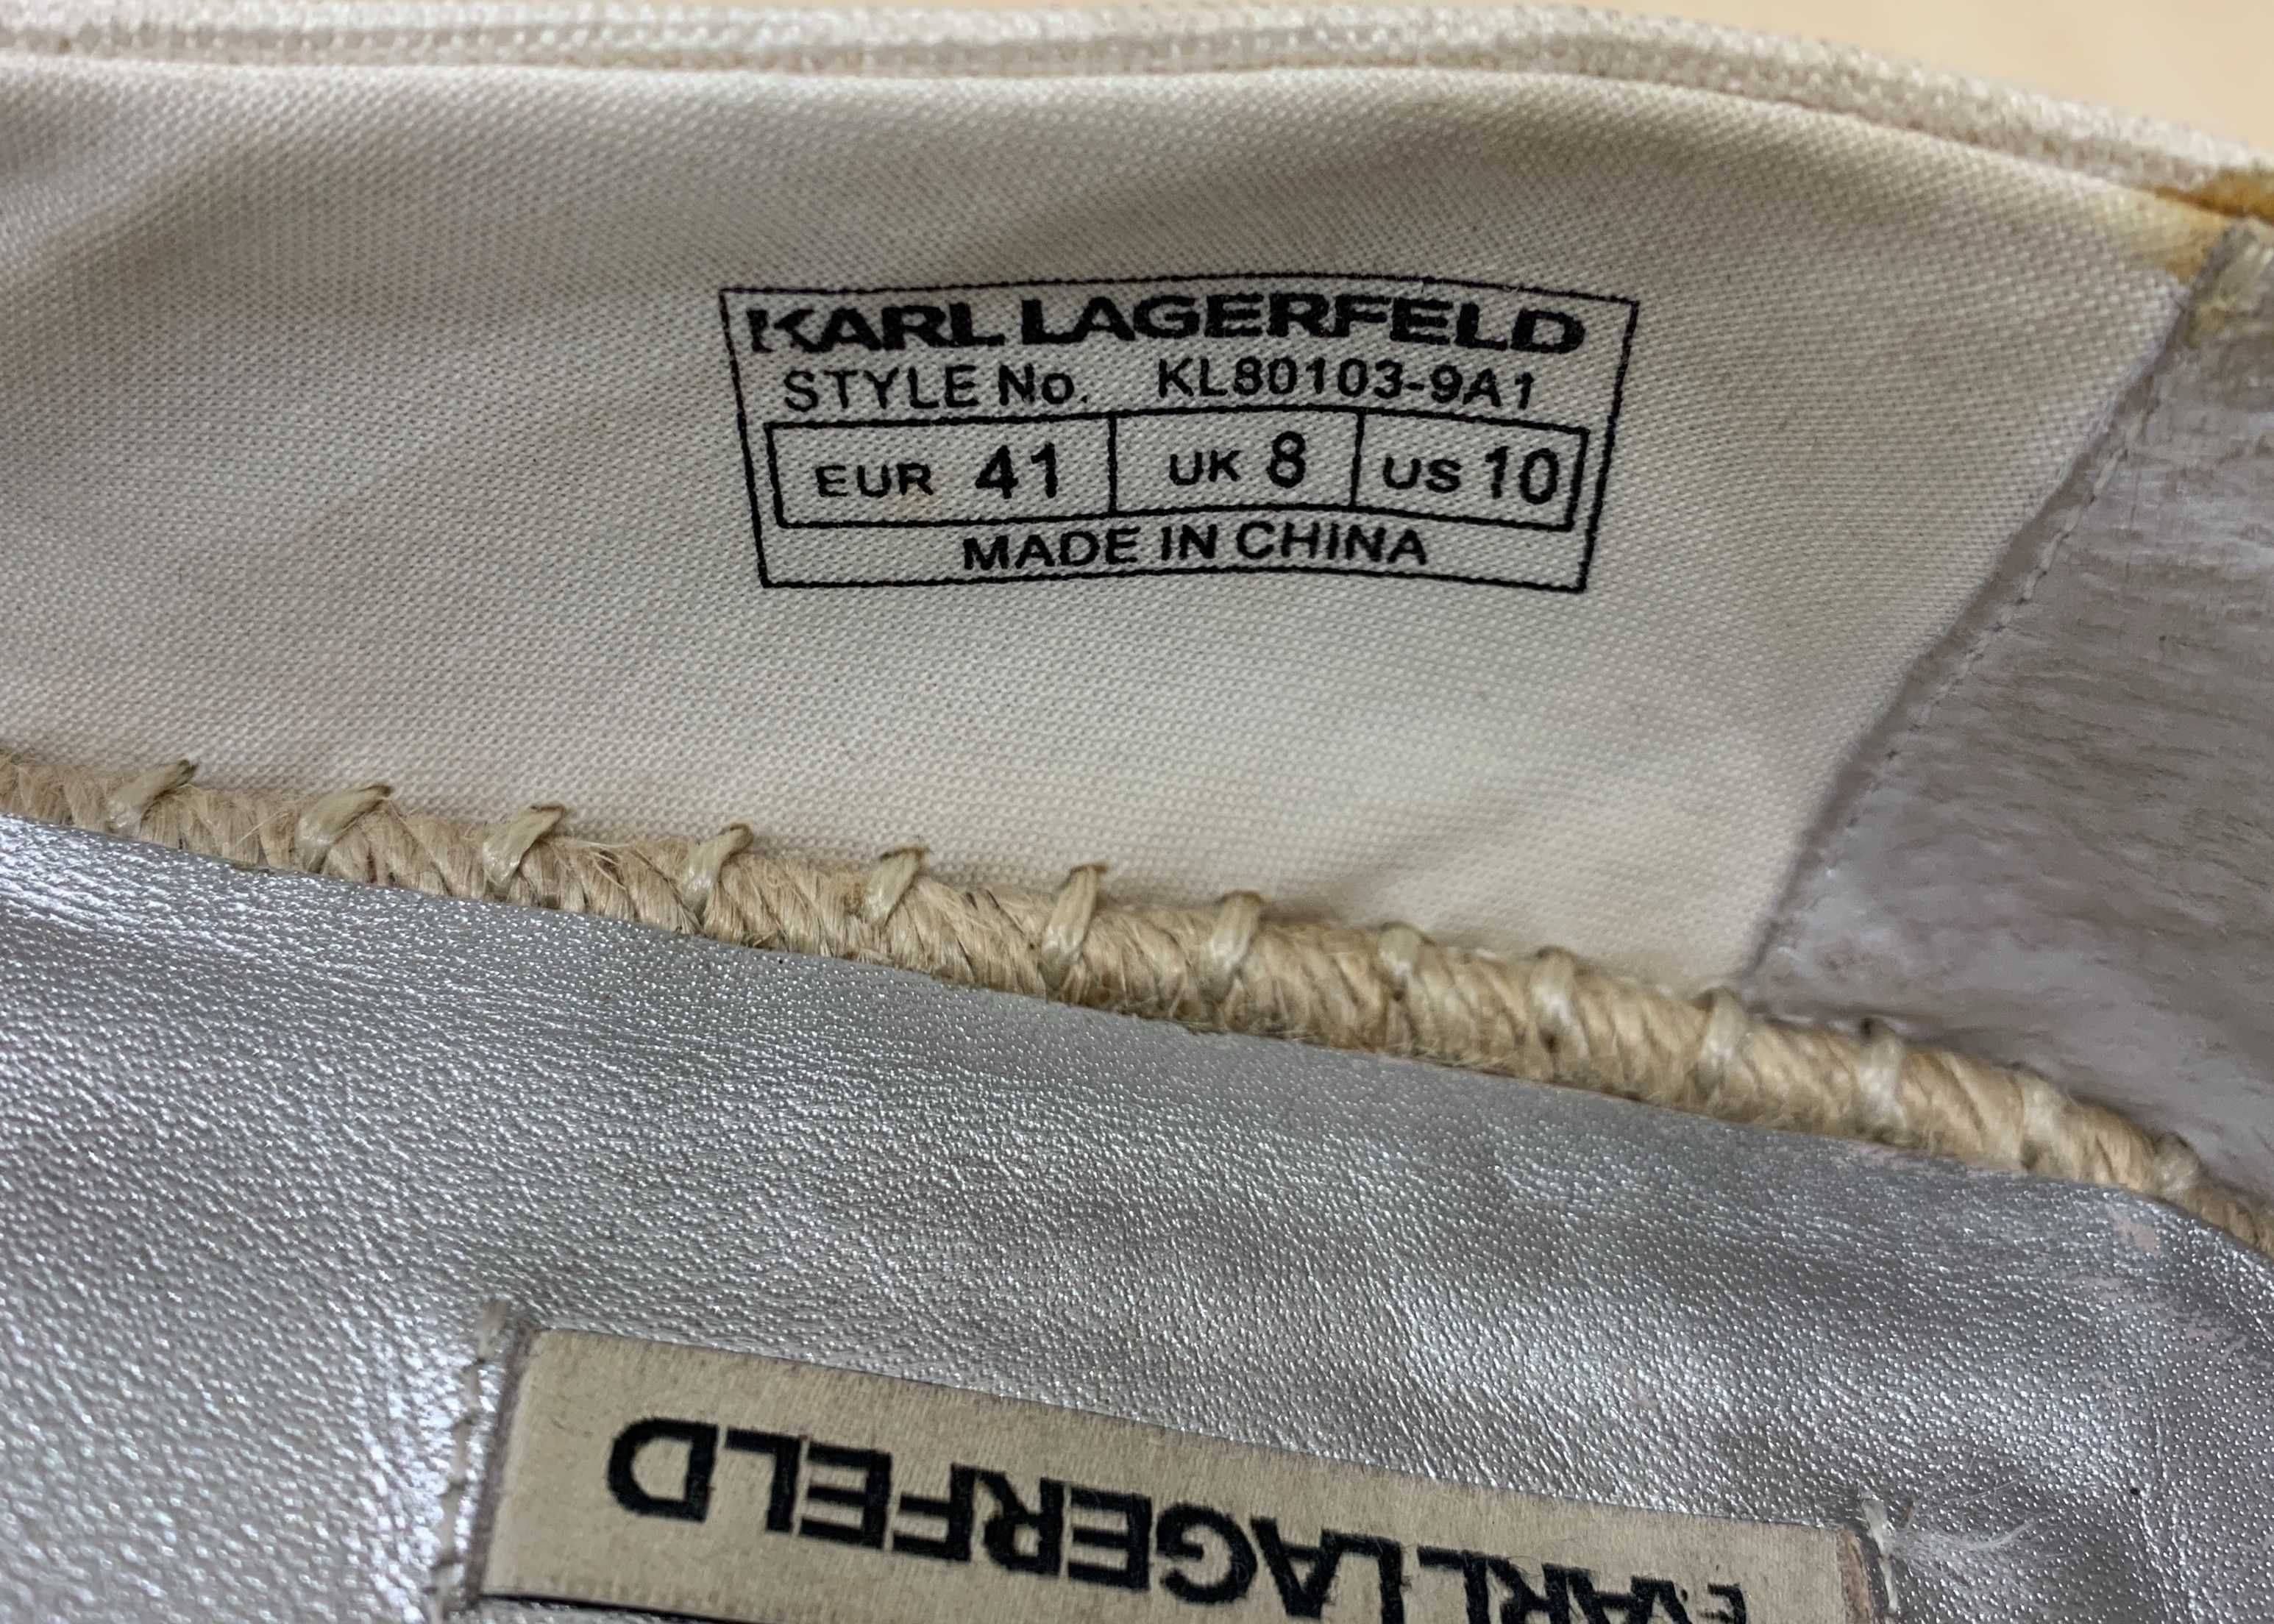 Espadrile Karl Lagerfeld  unisex marimea 41